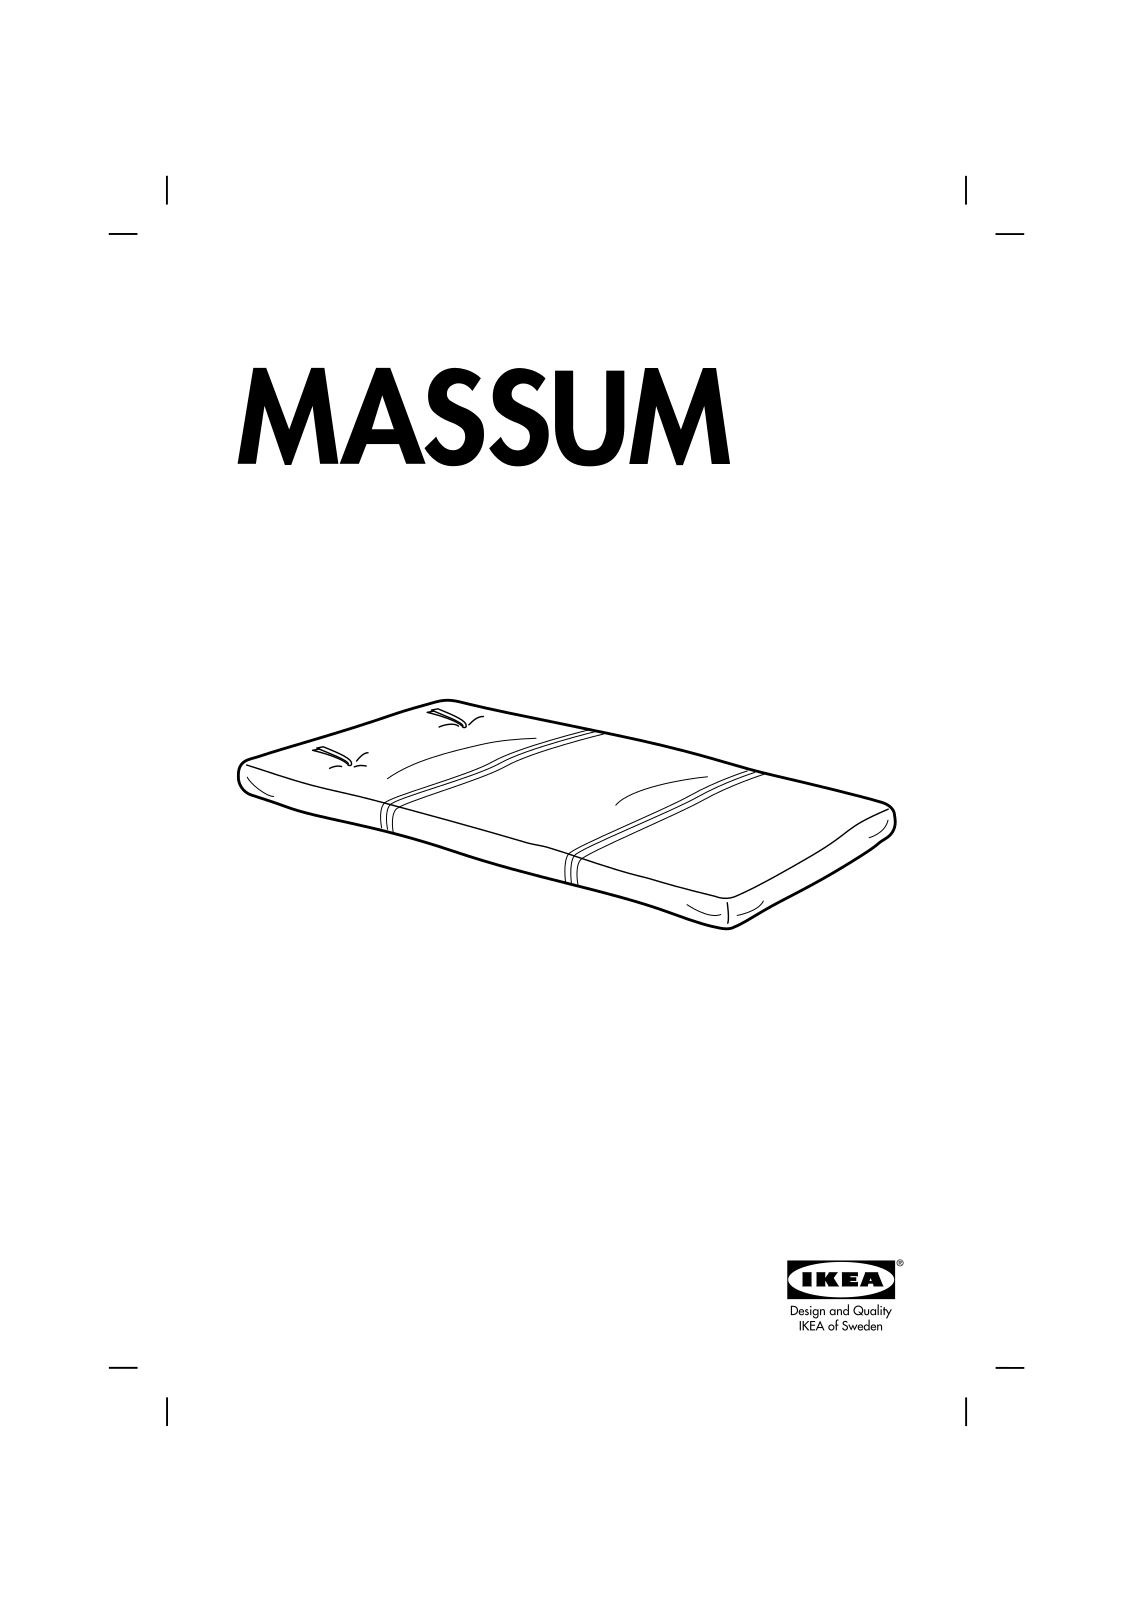 IKEA MASSUM FUTON CHAIR MATTRESS 28X79 Assembly Instruction